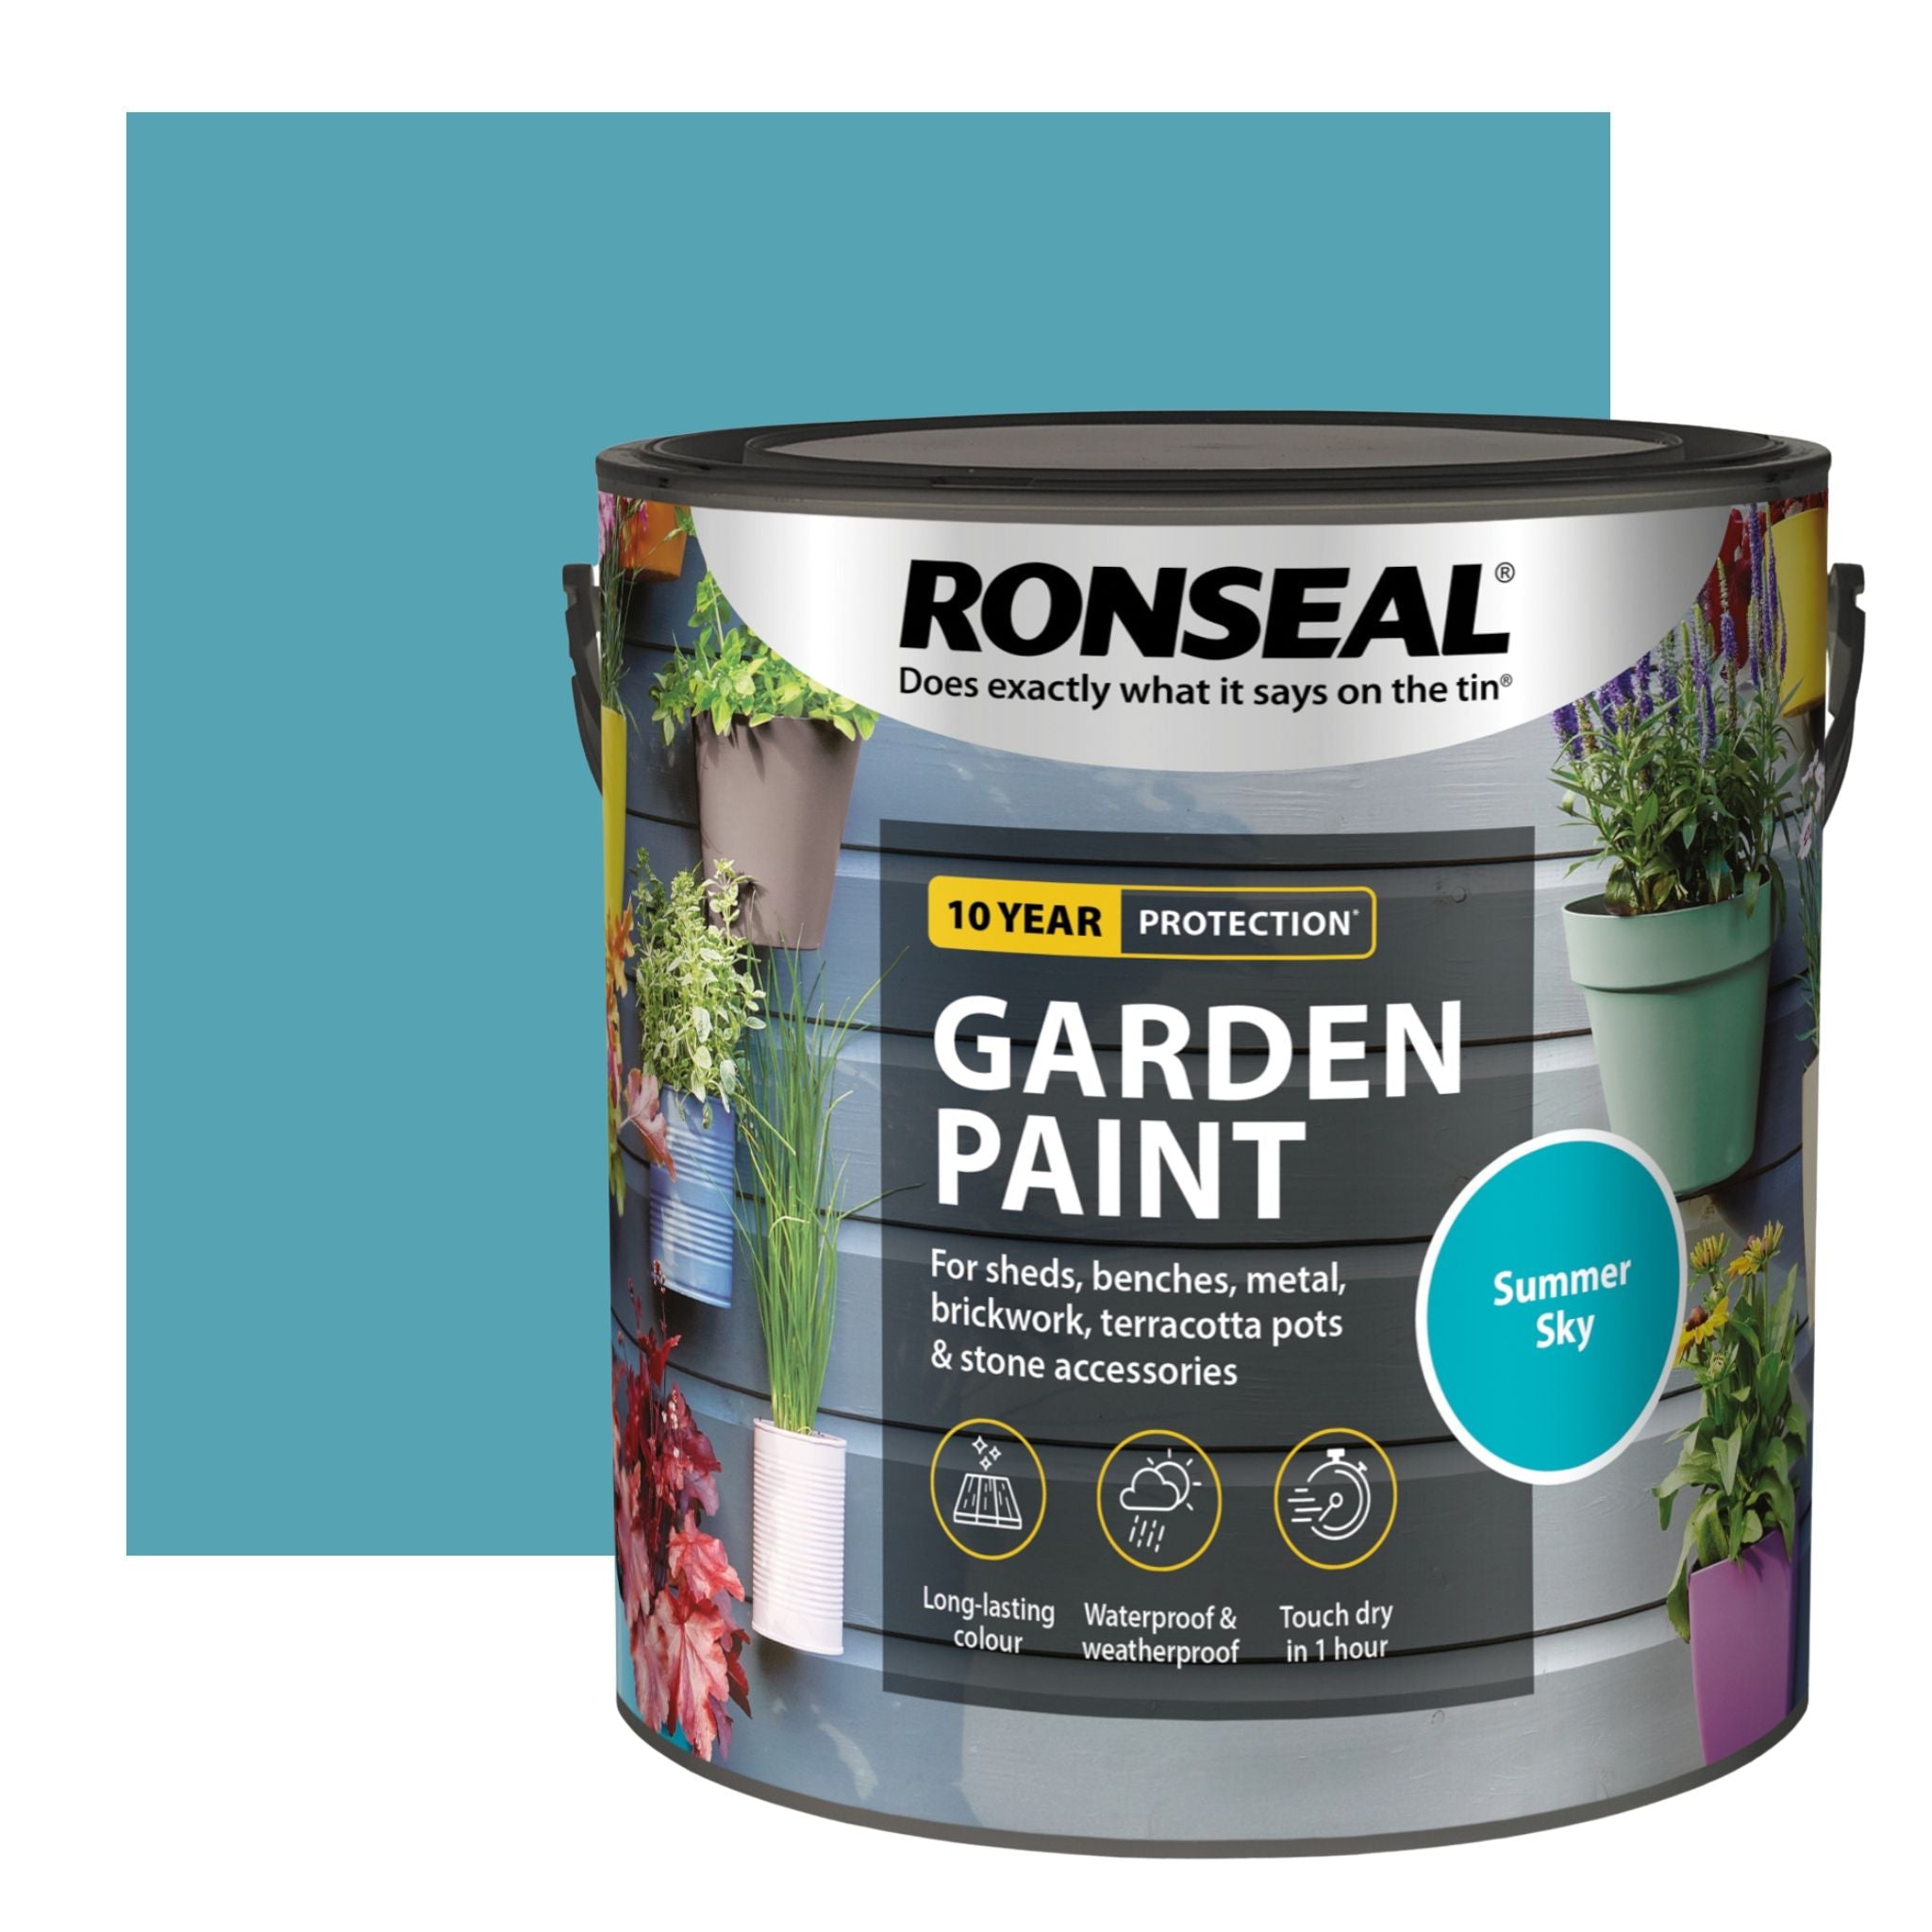 Ronseal Garden Paint - Restorate-5010214885145